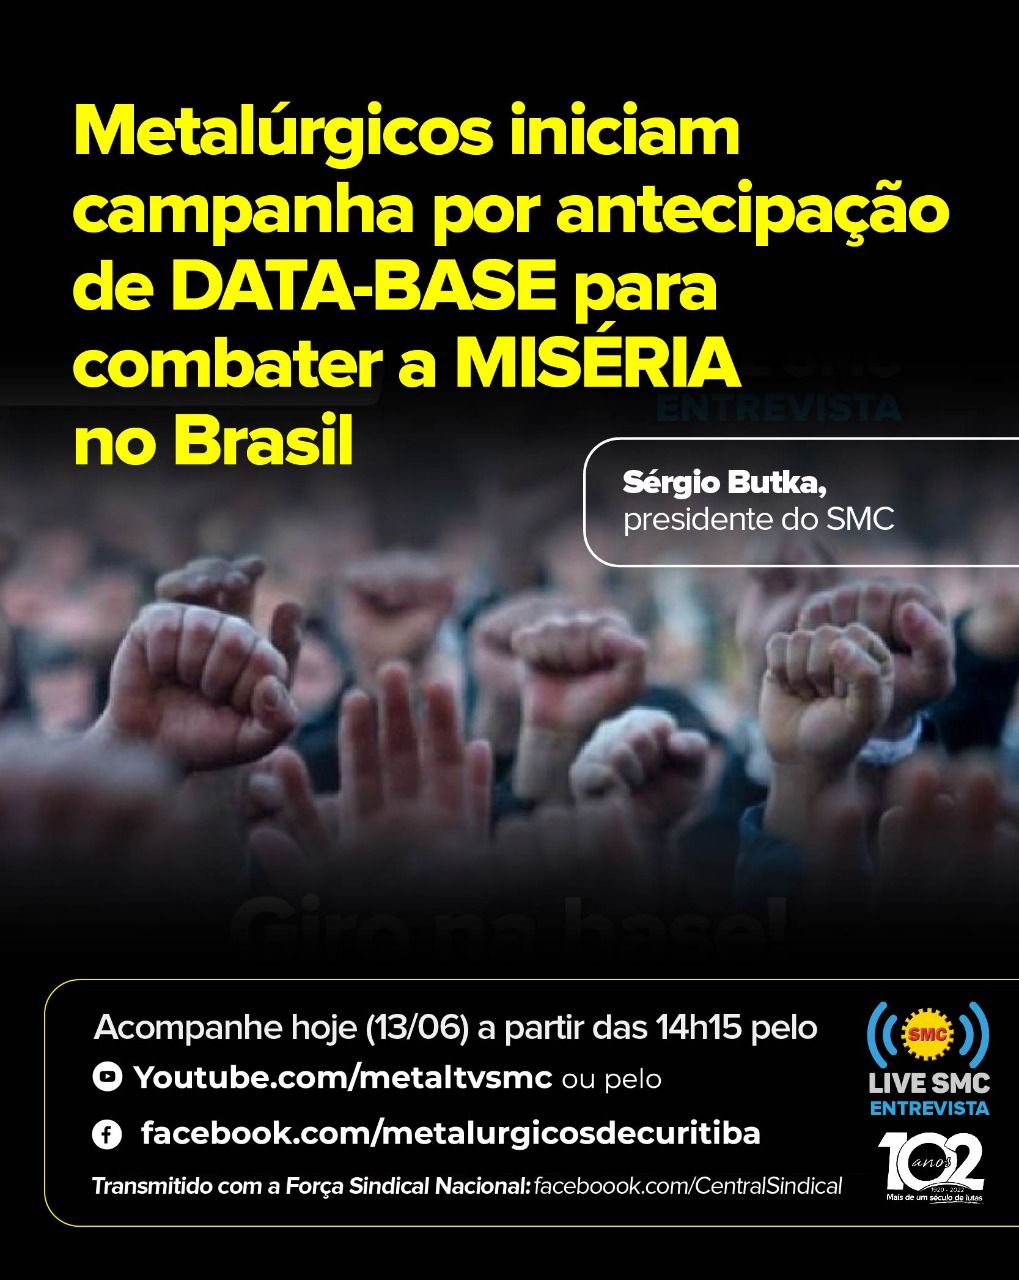 Live SMC: Sérgio Butka fala sobre campanha por antecipação de data-base para combater a miséria no Brasil